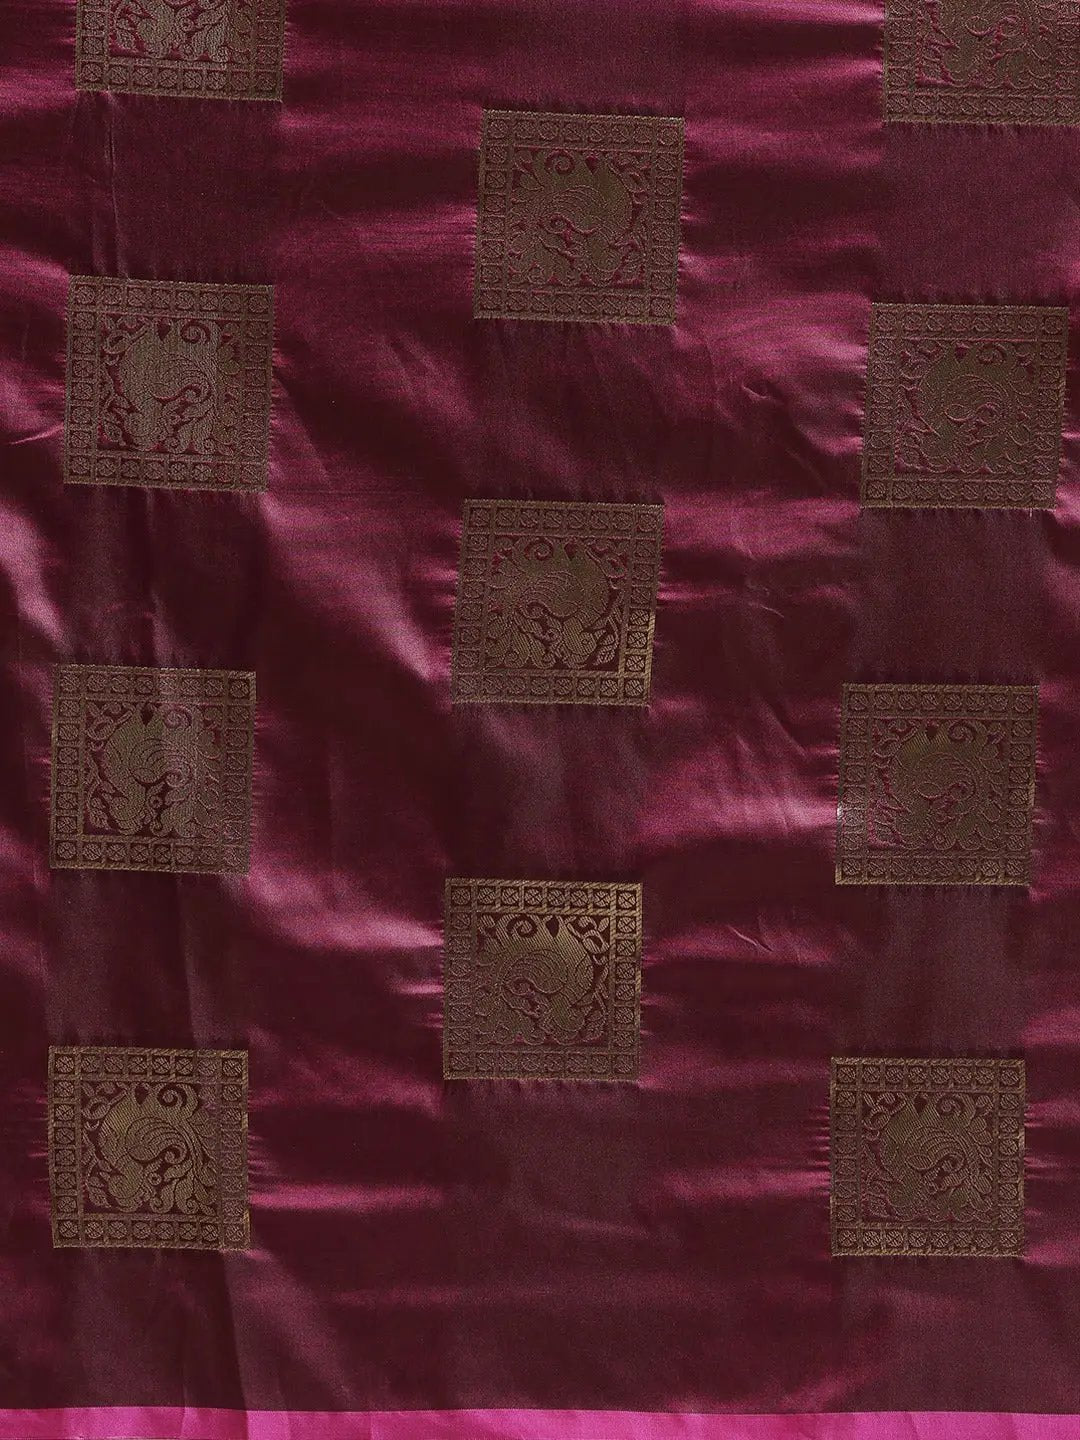 Styles Kanjivaram Burgundy Colour Silk Blend Saree